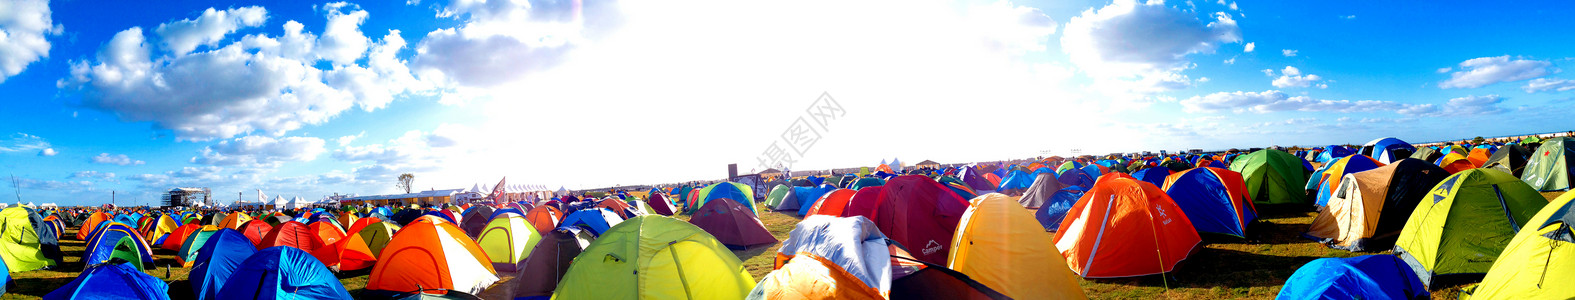 扎营户外草地上的帐篷背景